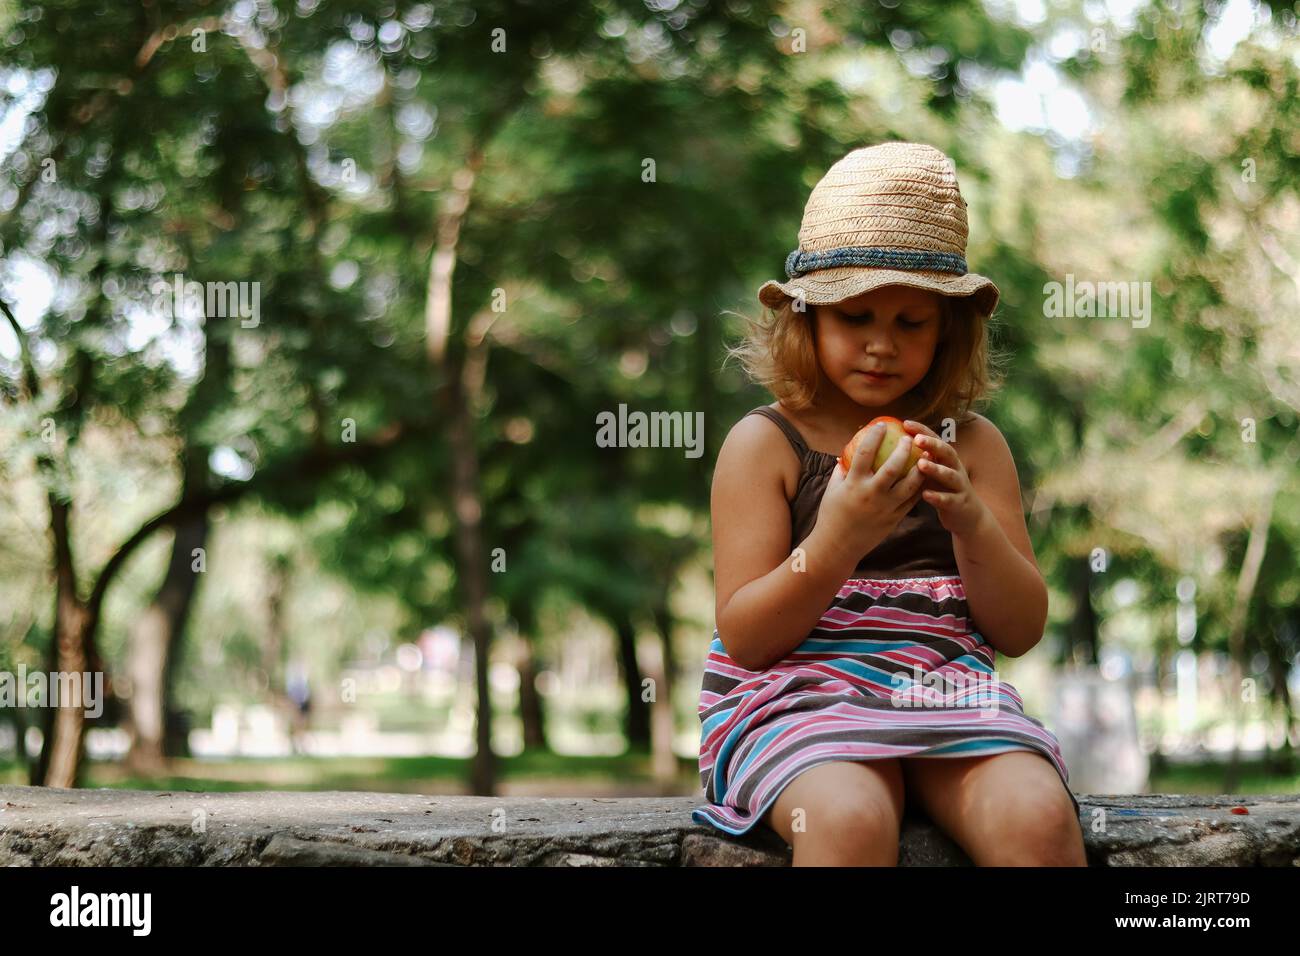 Portrait d'un enfant avec une pomme dans ses mains. Bébé de 5 ans mange une pomme. Fille dans un chapeau de paille. Banque D'Images